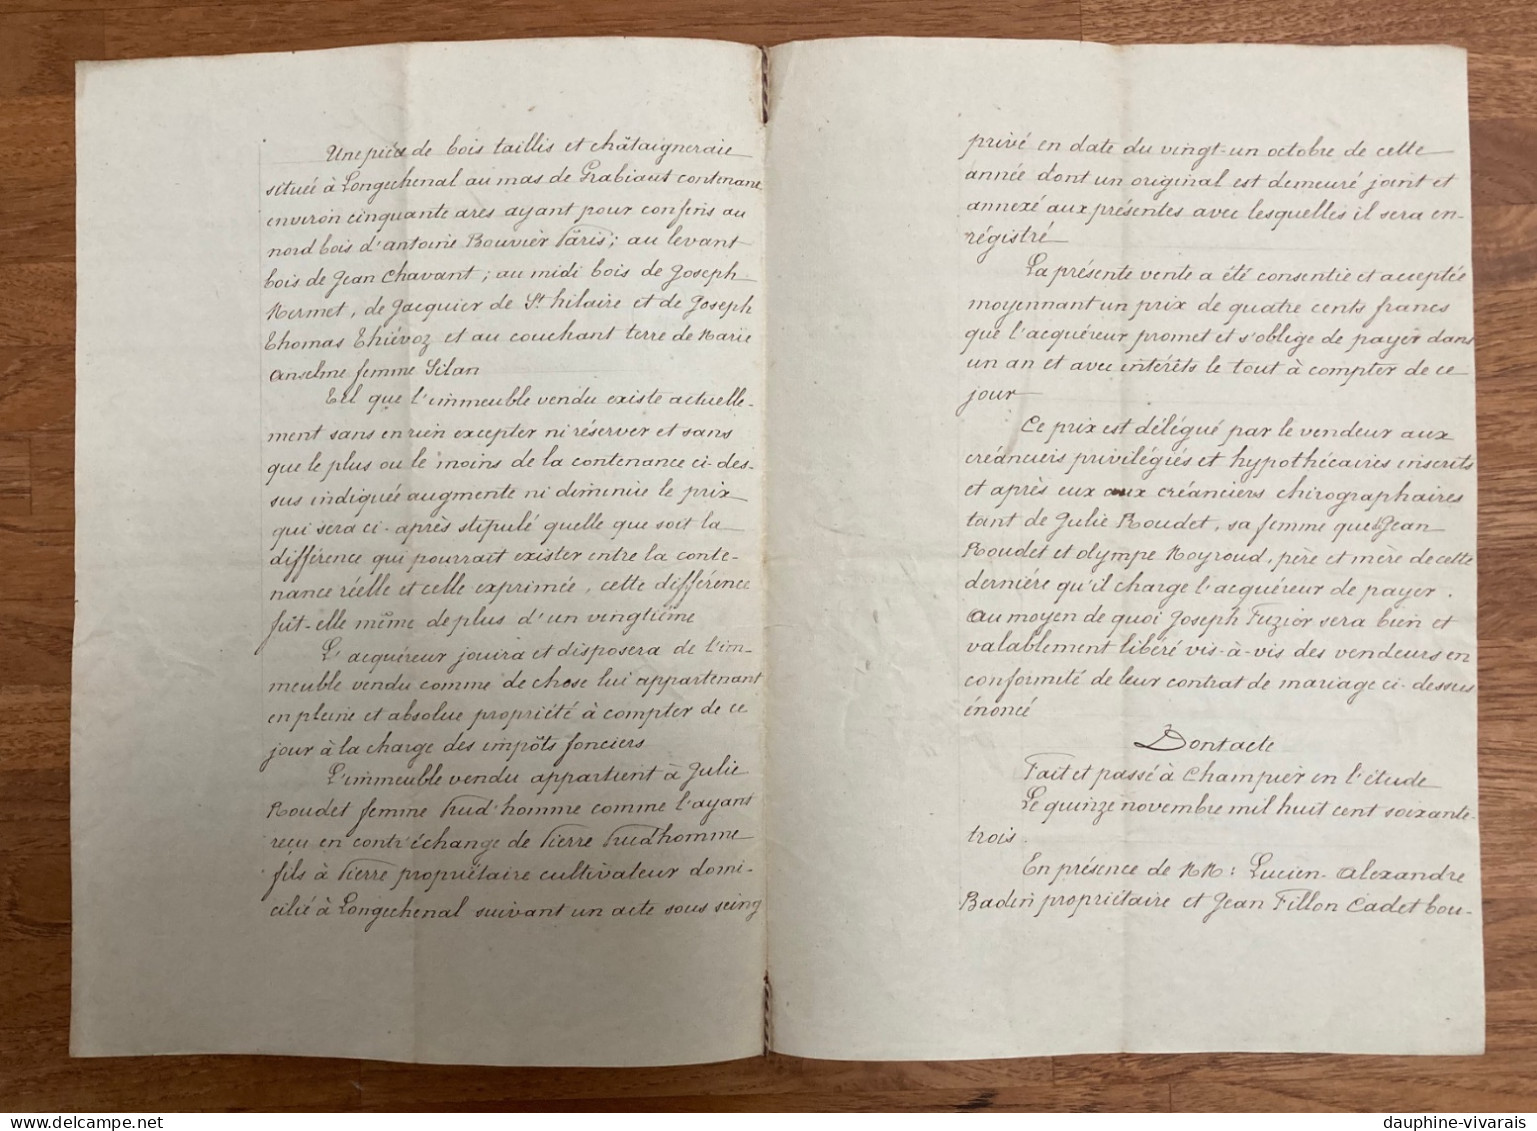 PAPIER TIMBRE 1863  2EME EMPIRE - LONGCHENAL 38 ISERE - VENTE  PRUDHOMME ROUDET FUZIER - Lettres & Documents